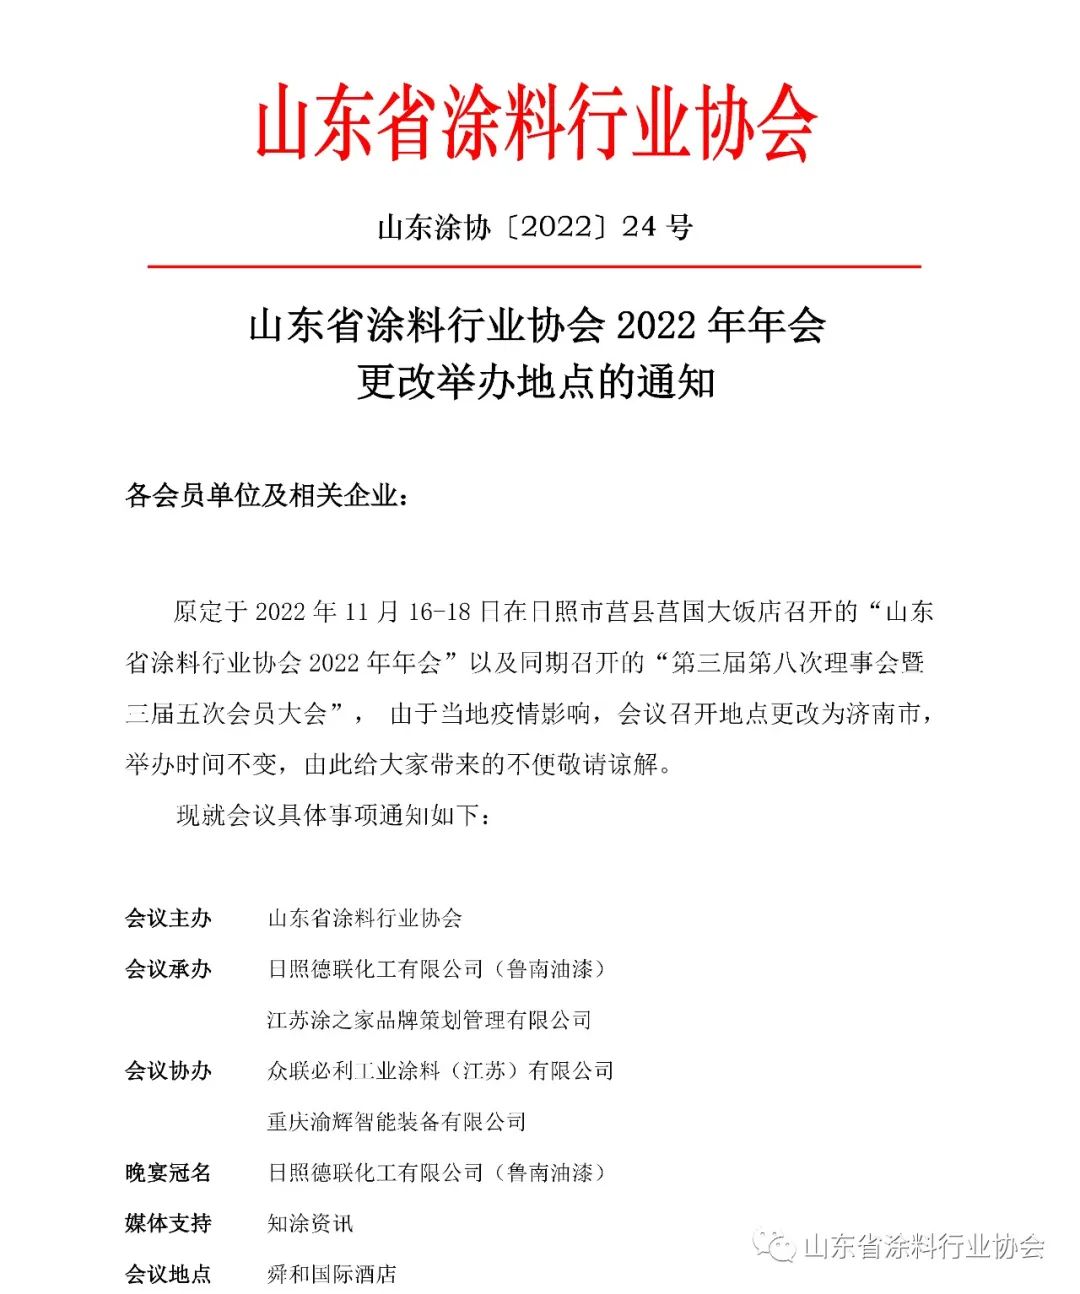 山东省涂料行业协会2022年年会更改举办地点的通知